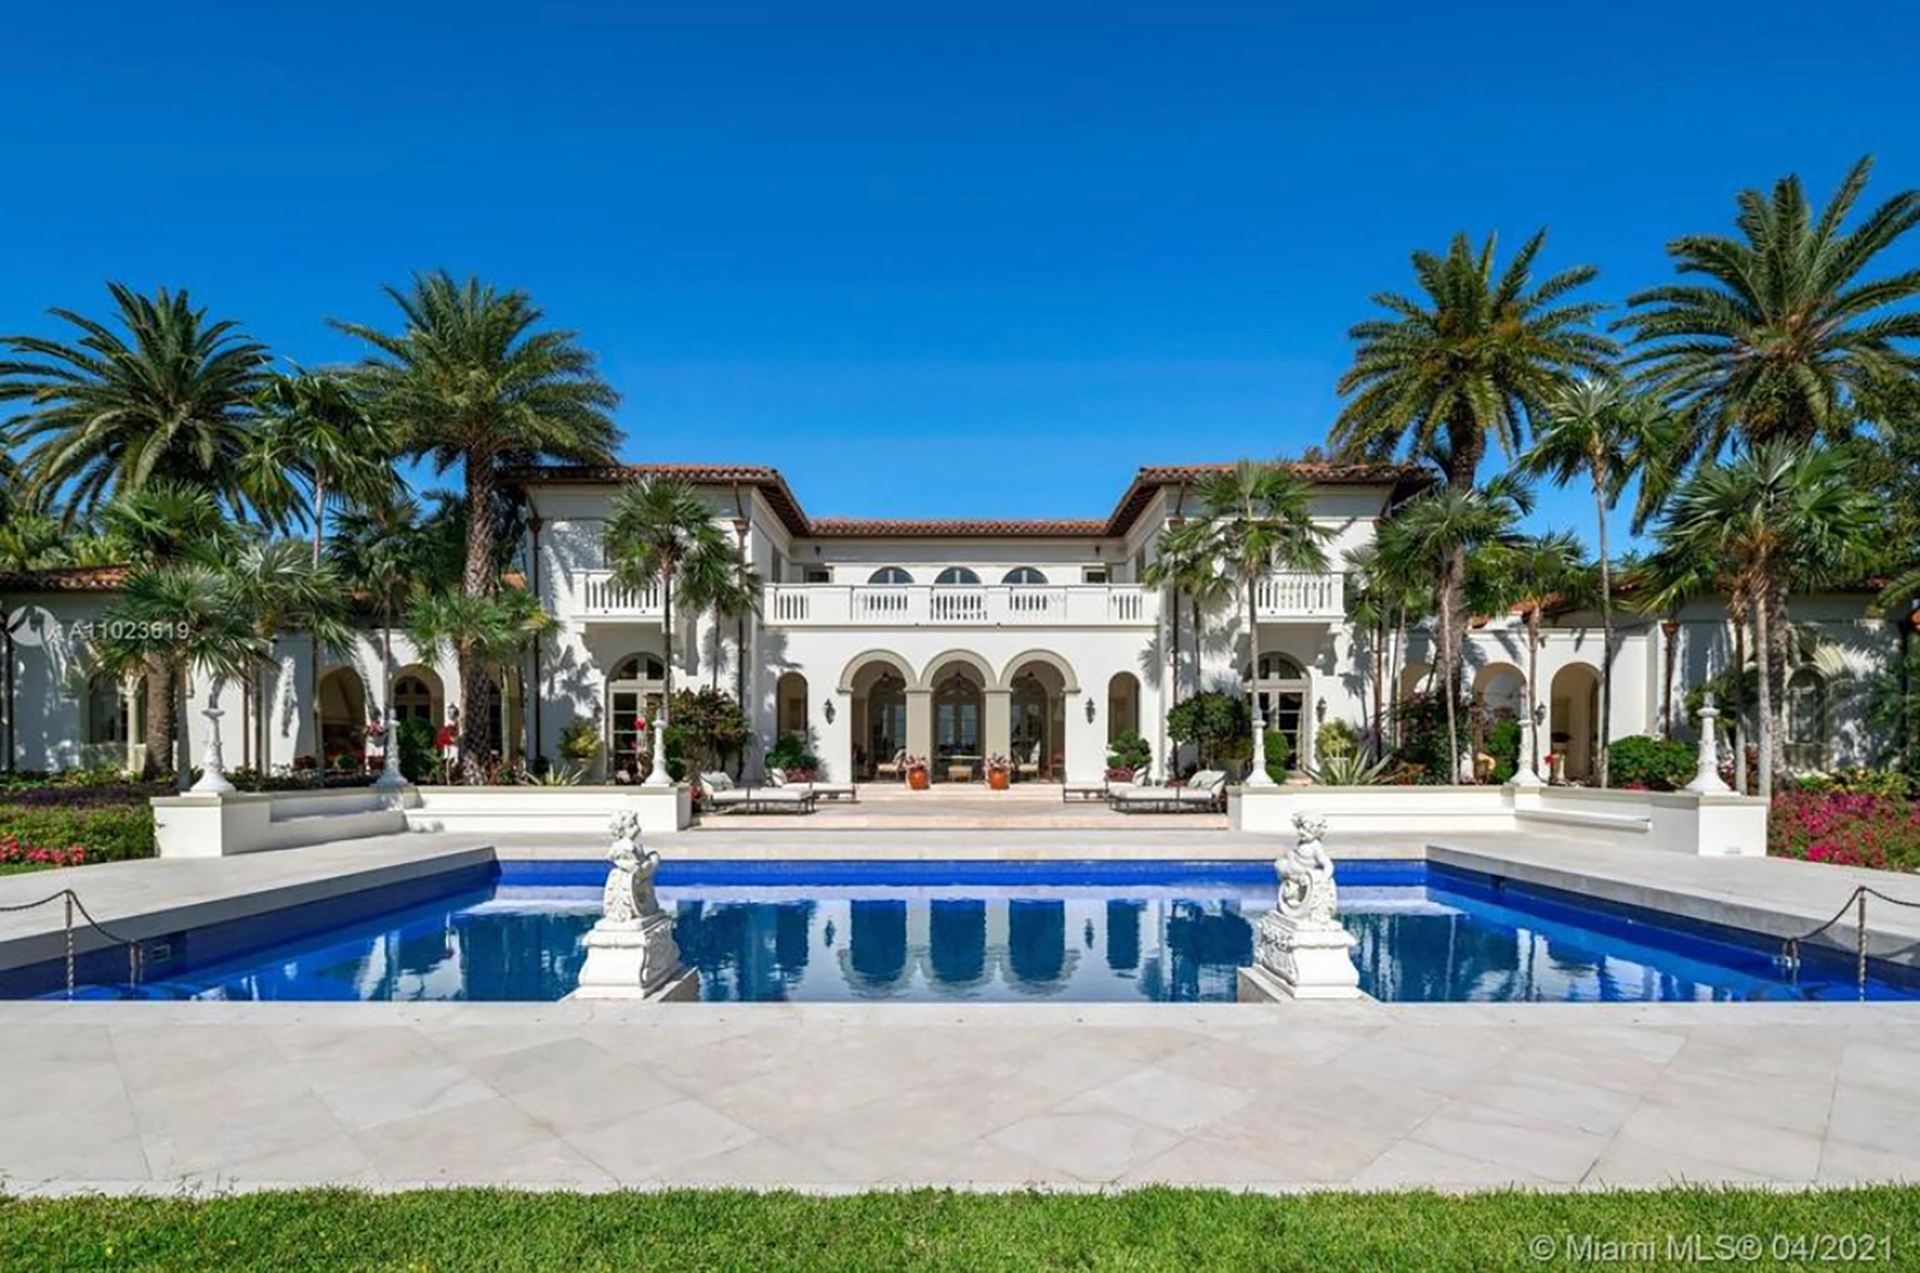 Cómo son las cinco mansiones más costosas a la venta en Miami - Infobae